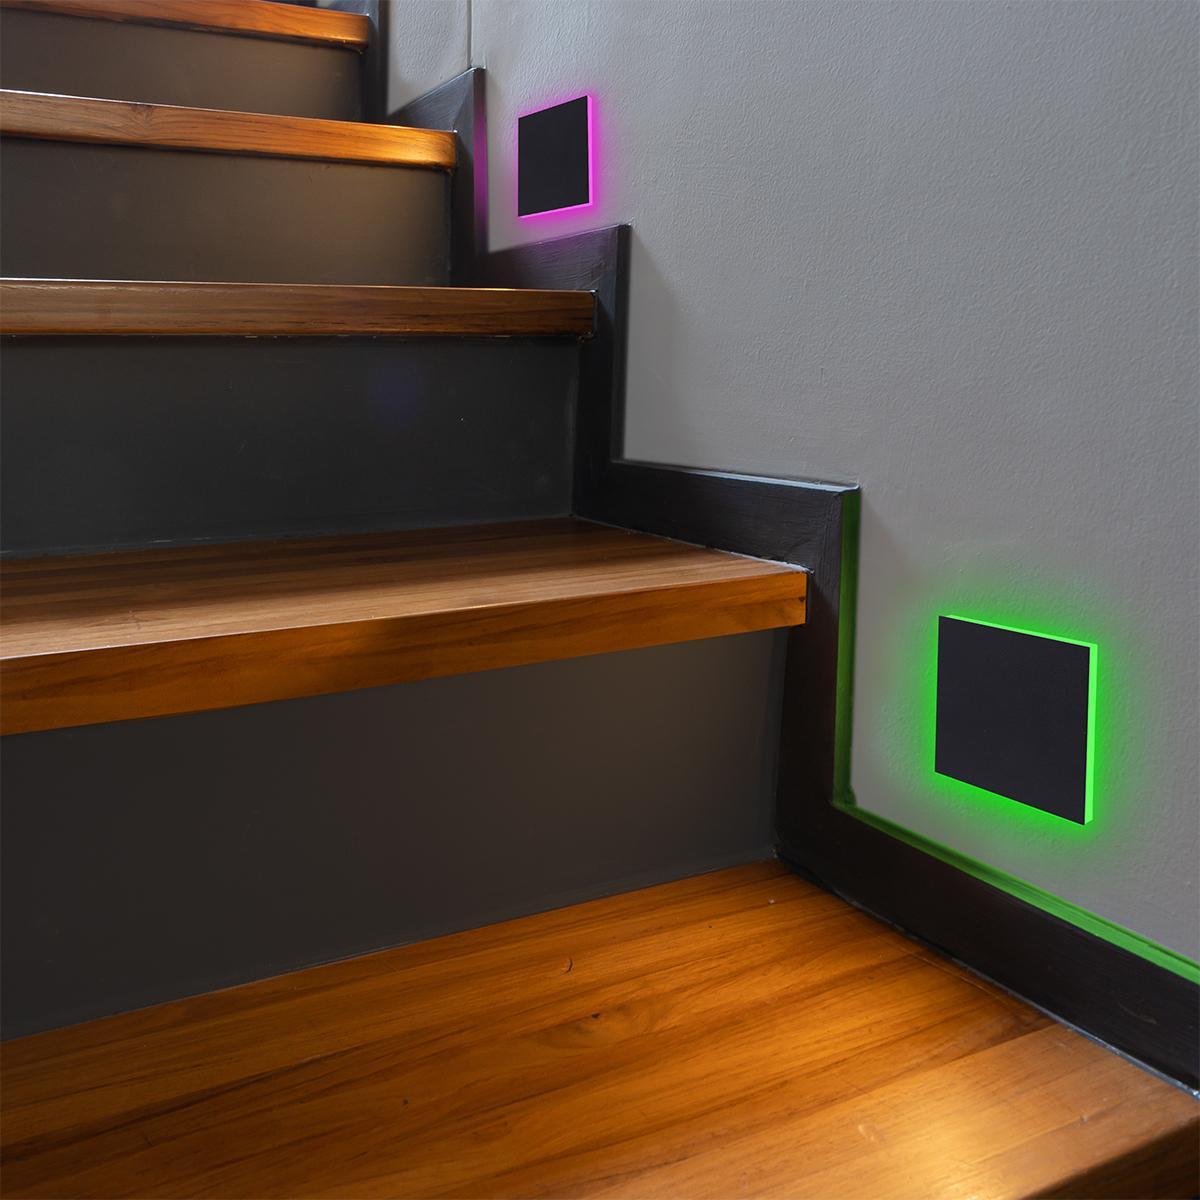 LED Treppenleuchte eckig schwarz - Lichtfarbe: RGB Warmweiß 3W - Lichtaustritt: Linea